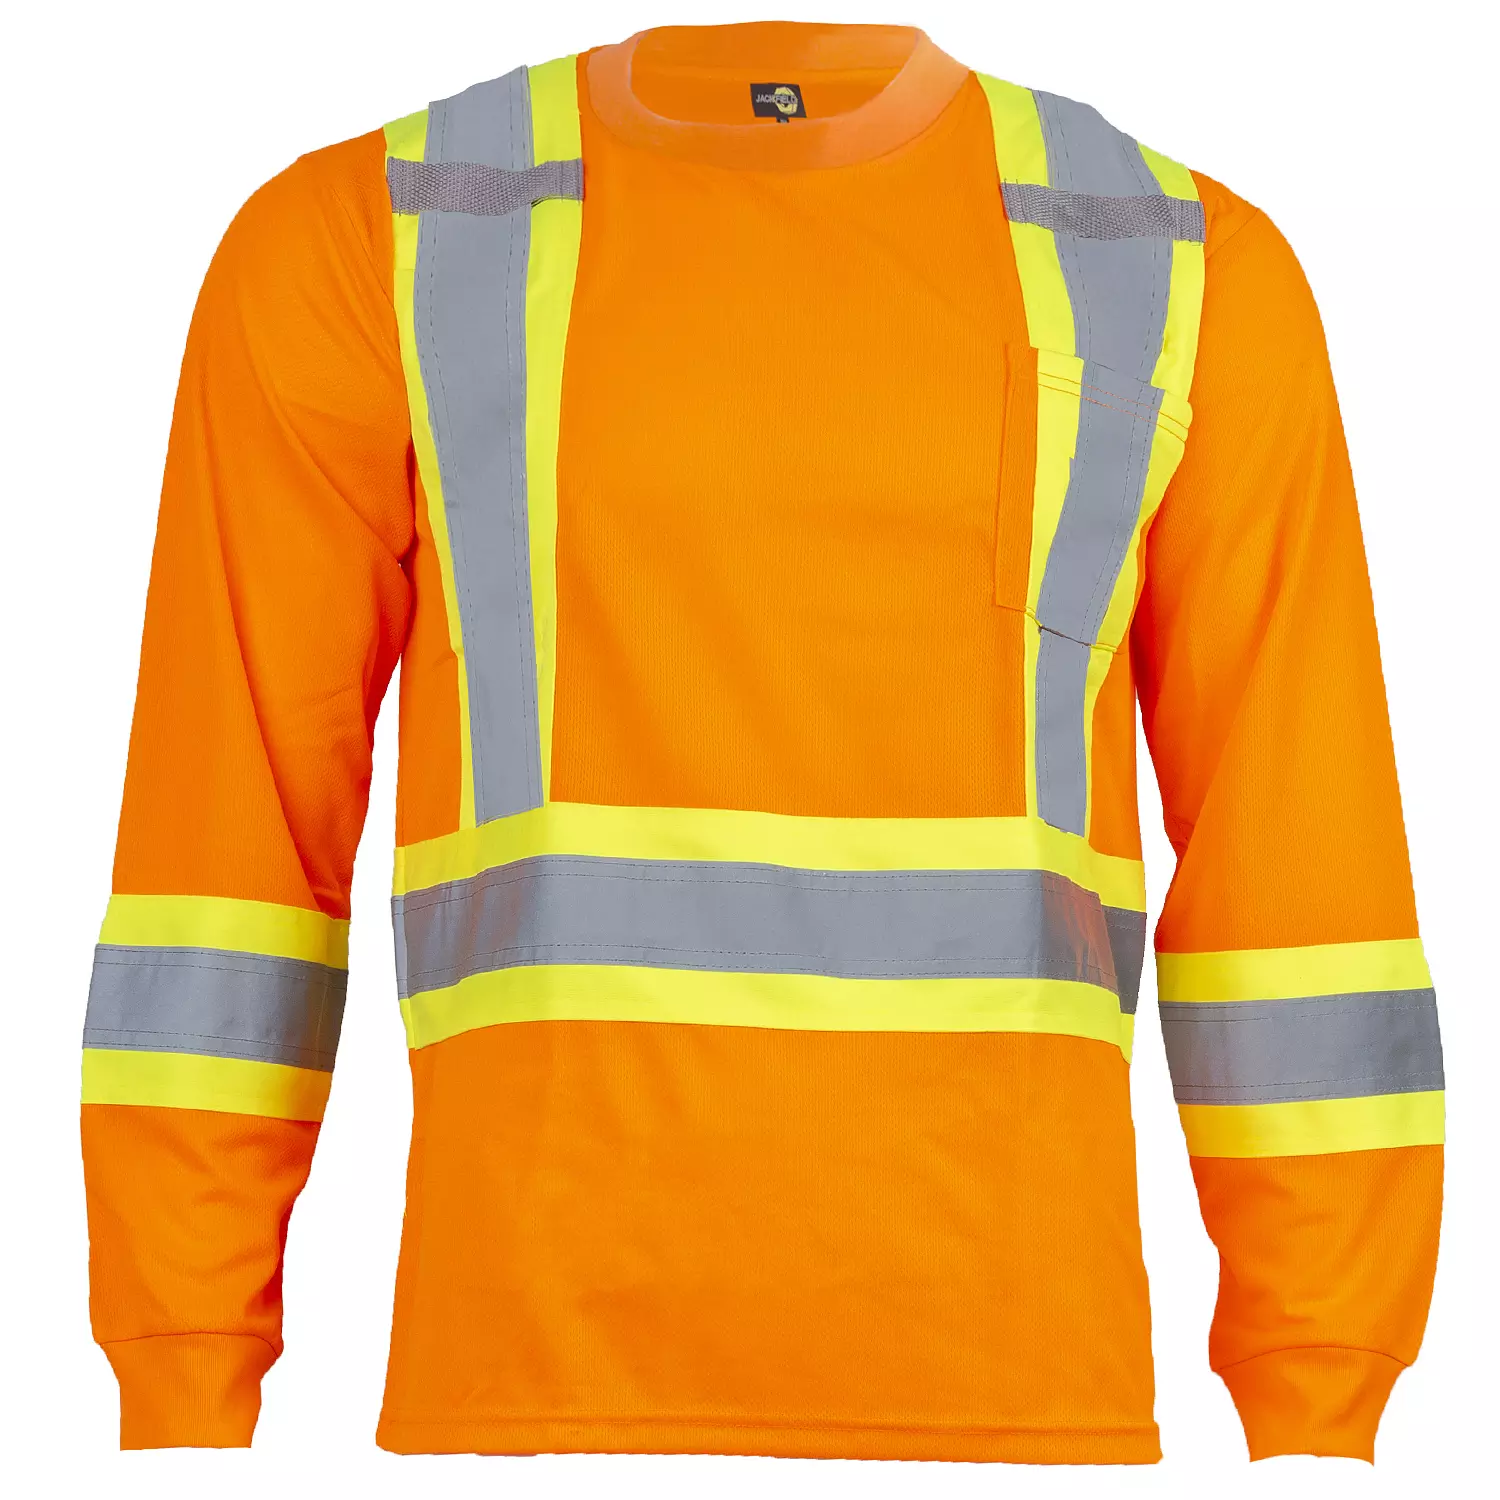 Jackfield - T-shirt manches longues, haute visibilité, orange, très grand (TG)